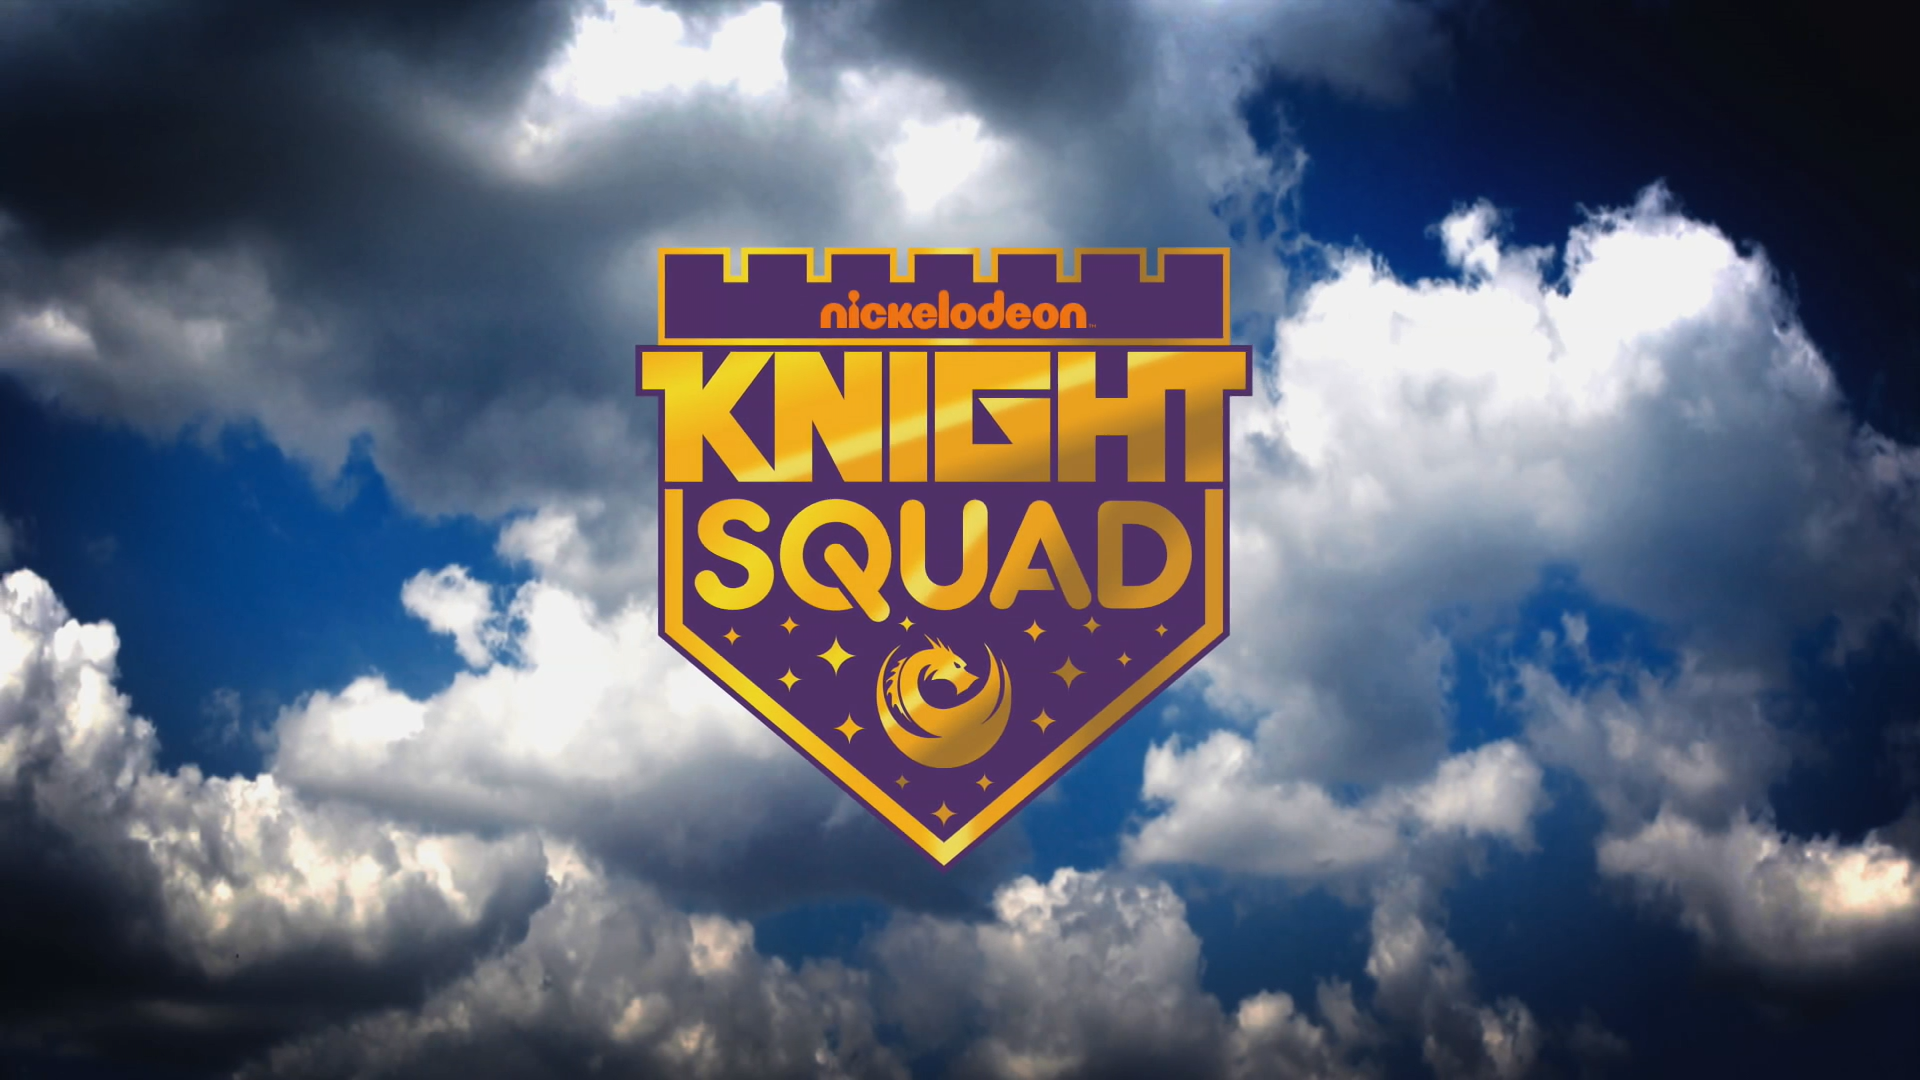 Knight Squad - Wikipedia